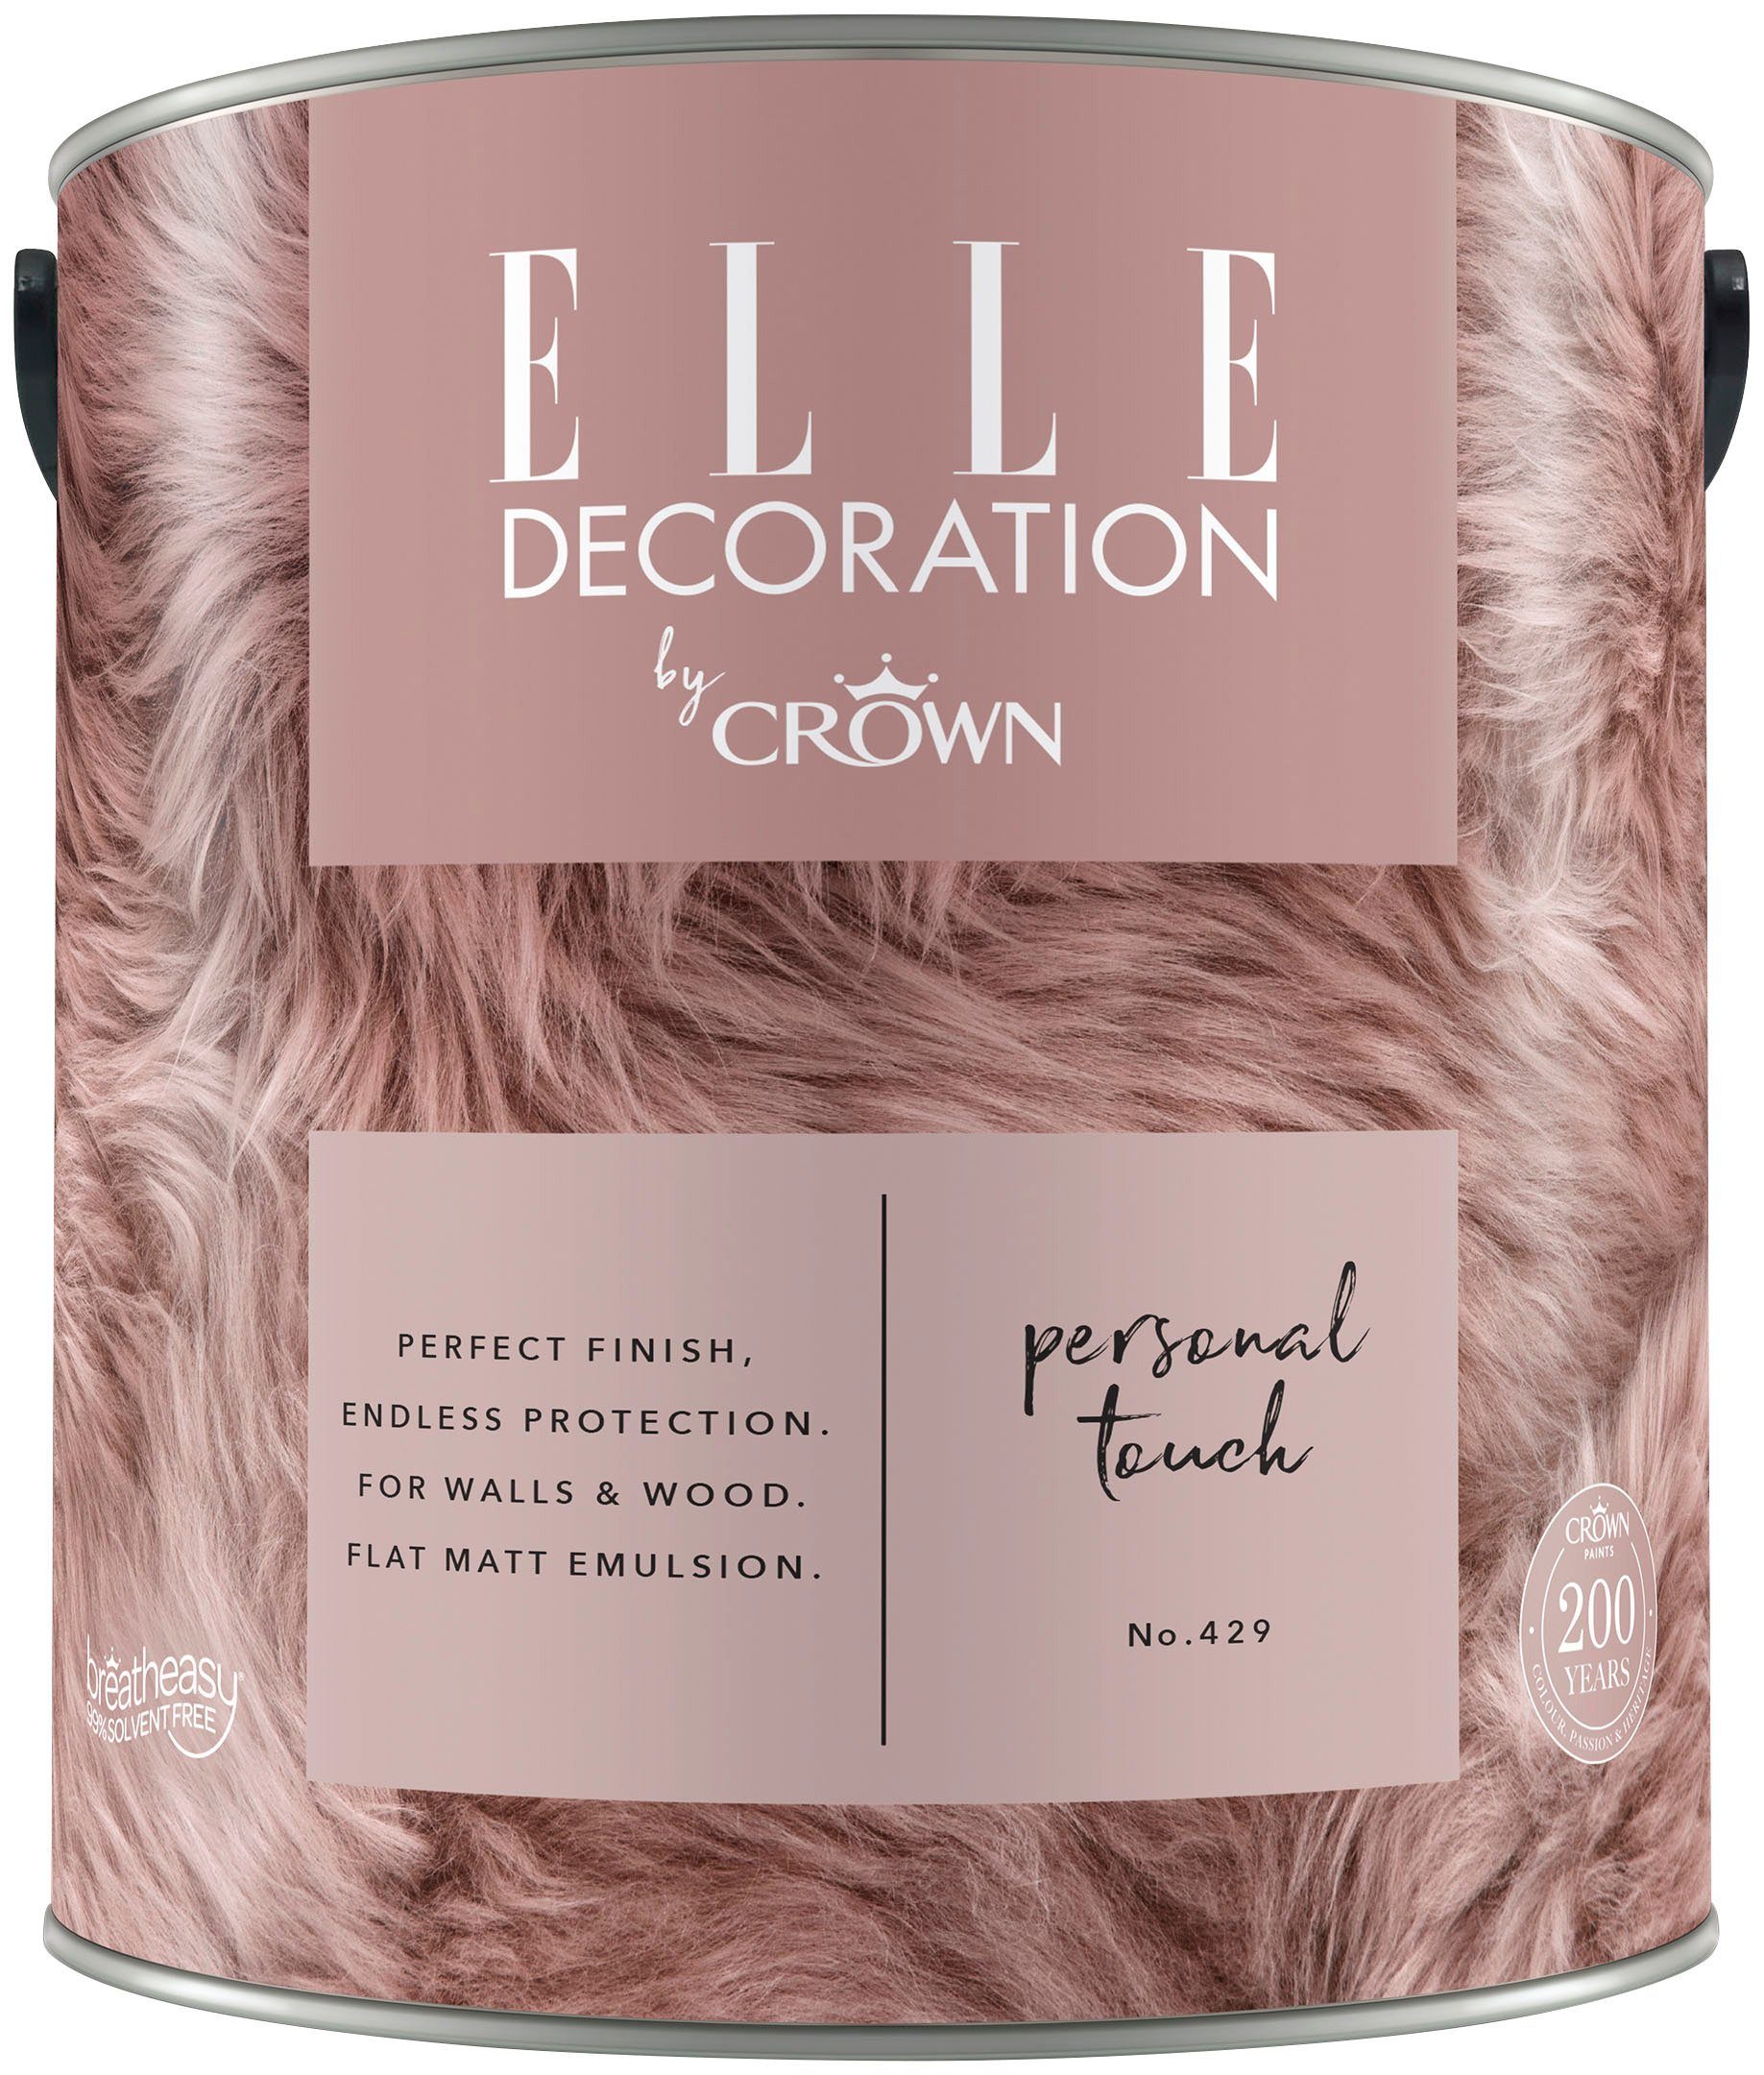 ELLE DECORATION Wand- und Deckenfarbe Premium Wandfarbe CRAFTED von ELLE DECORATION by Crown, extra-matt, auch für dekorative Holzanstriche geeignet Personal Touch No. 429